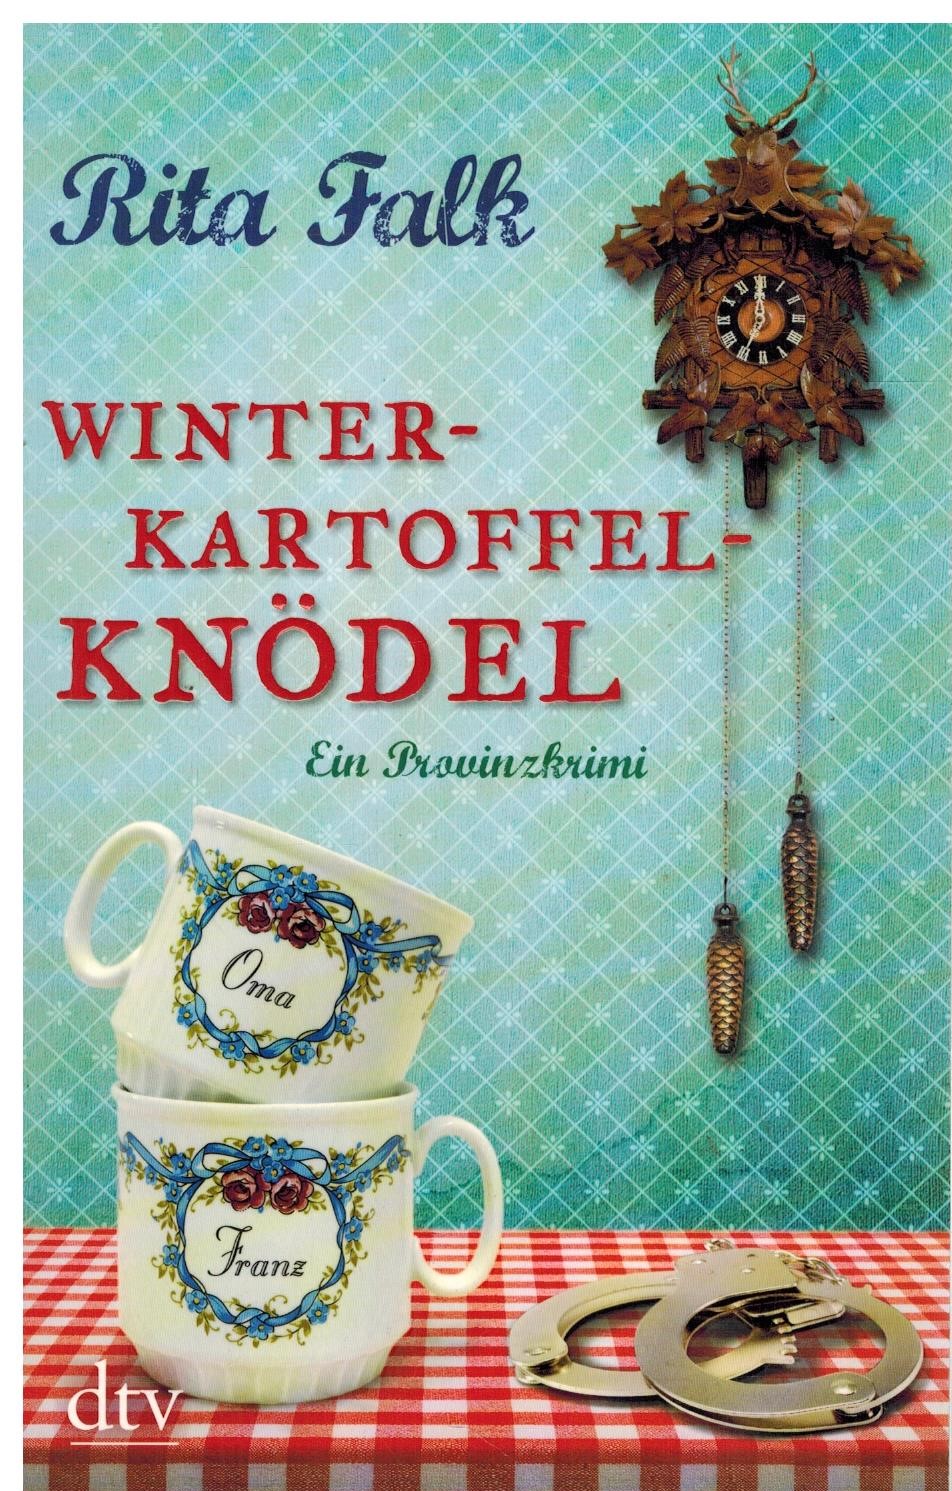 WINTER-KARTOFFEL-KNODEL